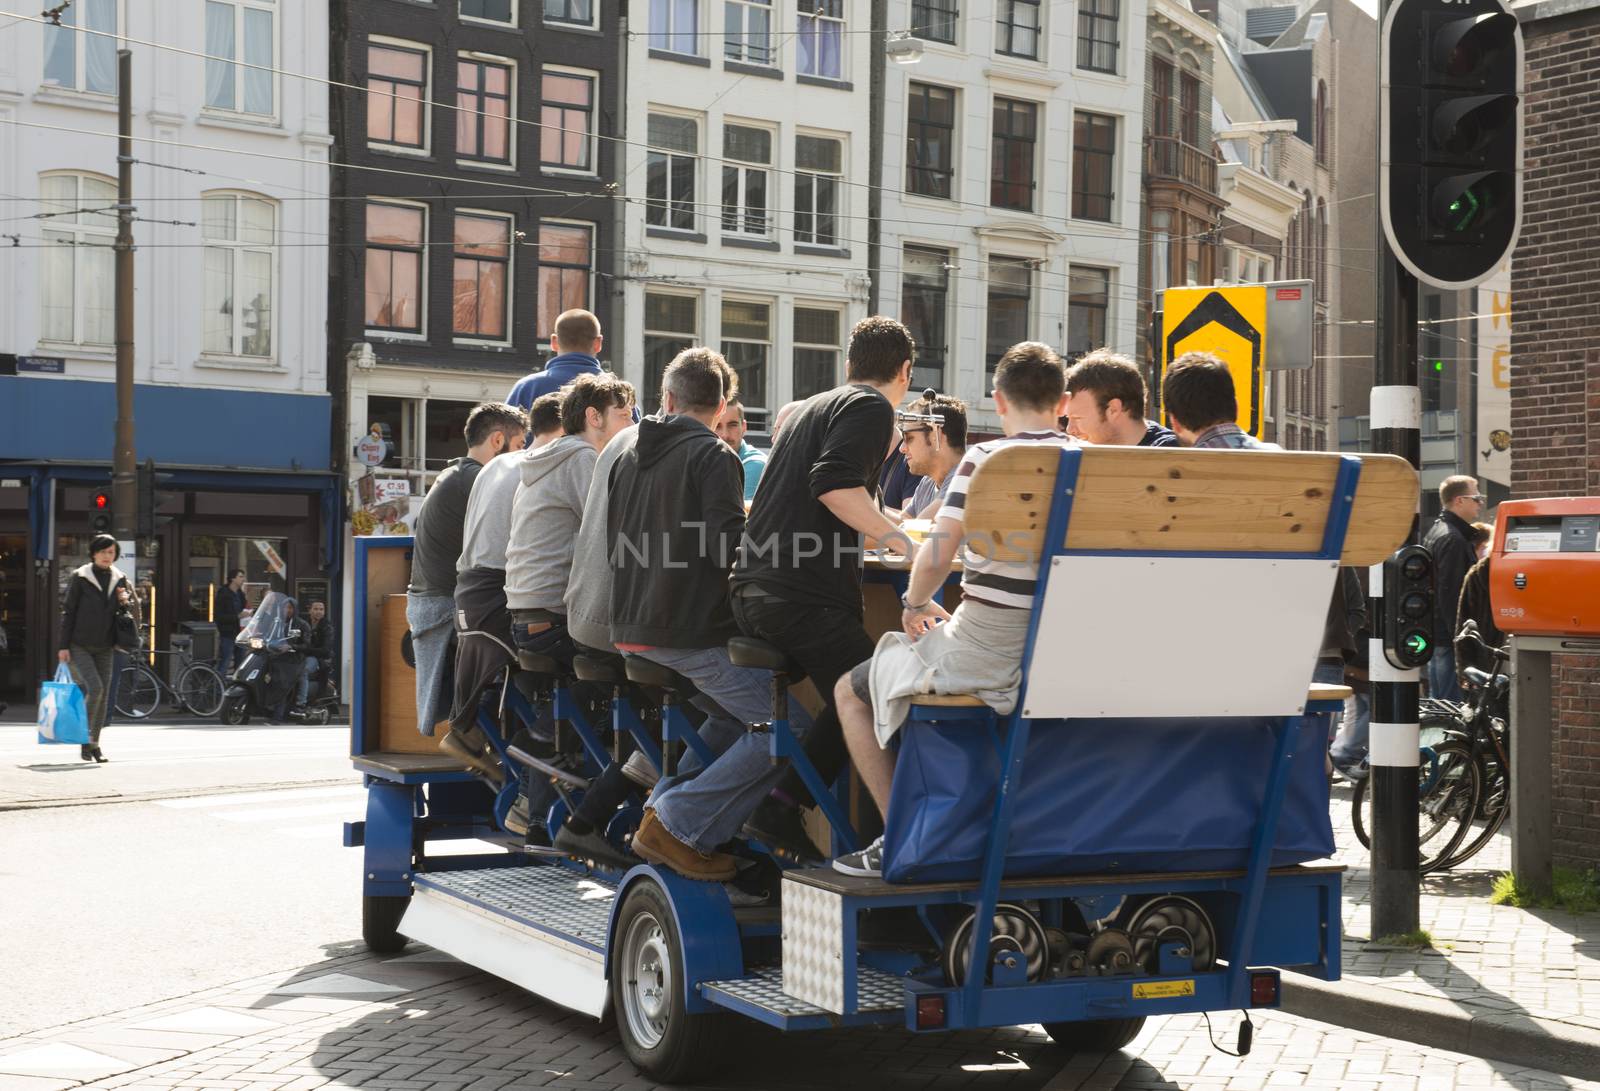 Amsterdam beer bike pub crawl by Alenmax